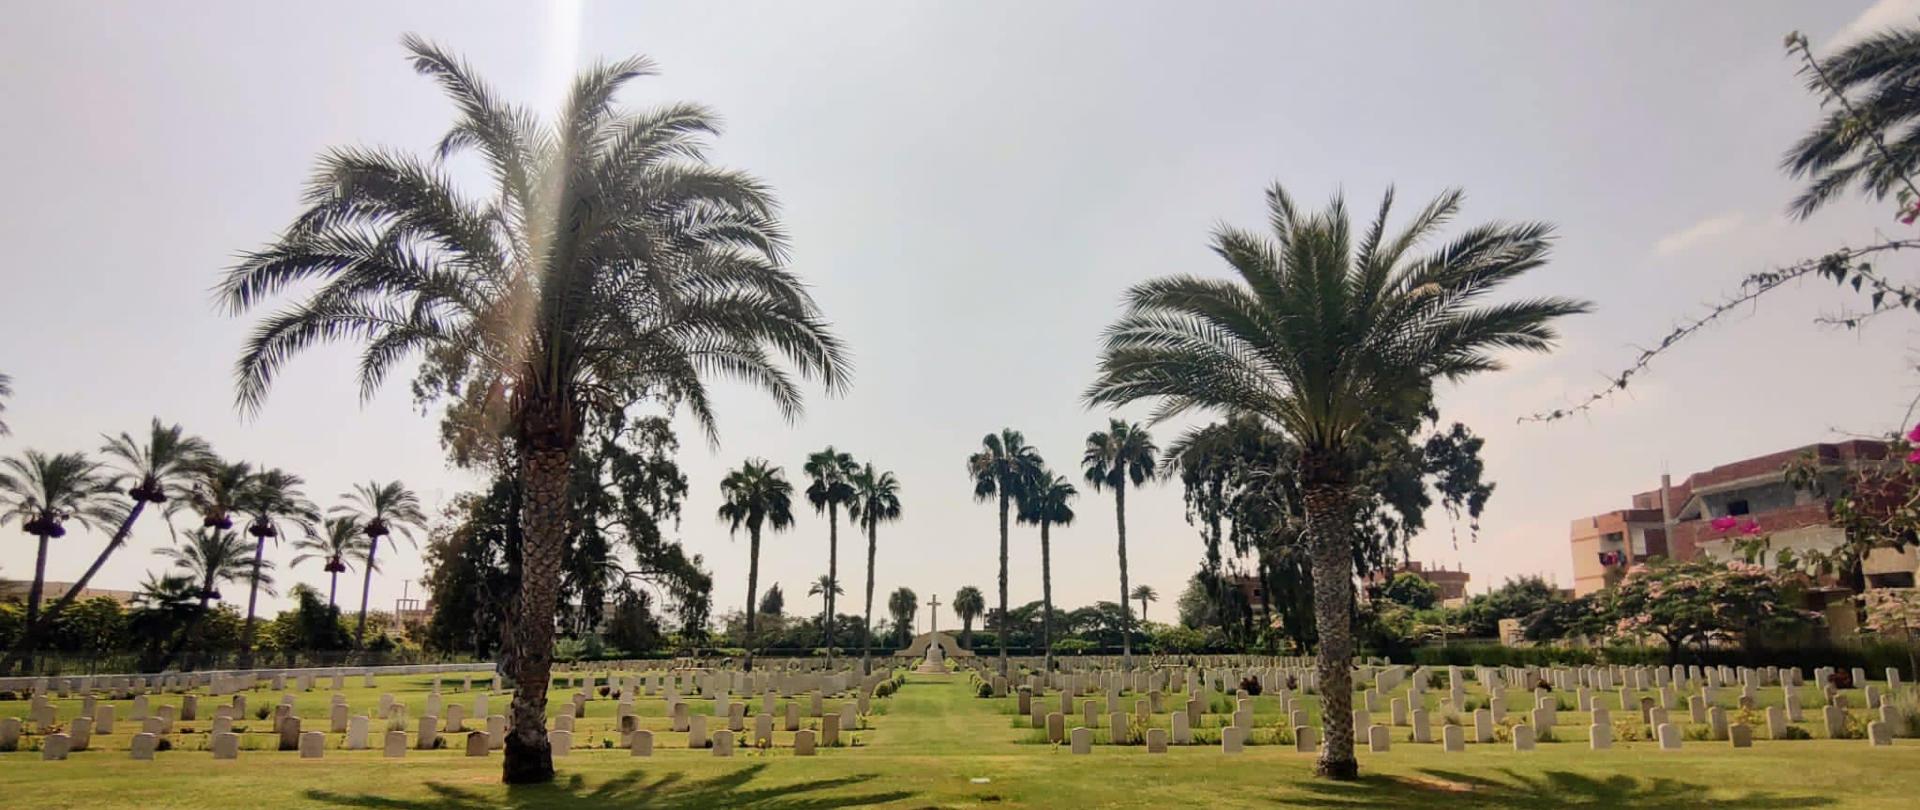 Cmentarz wojenny w Fayid